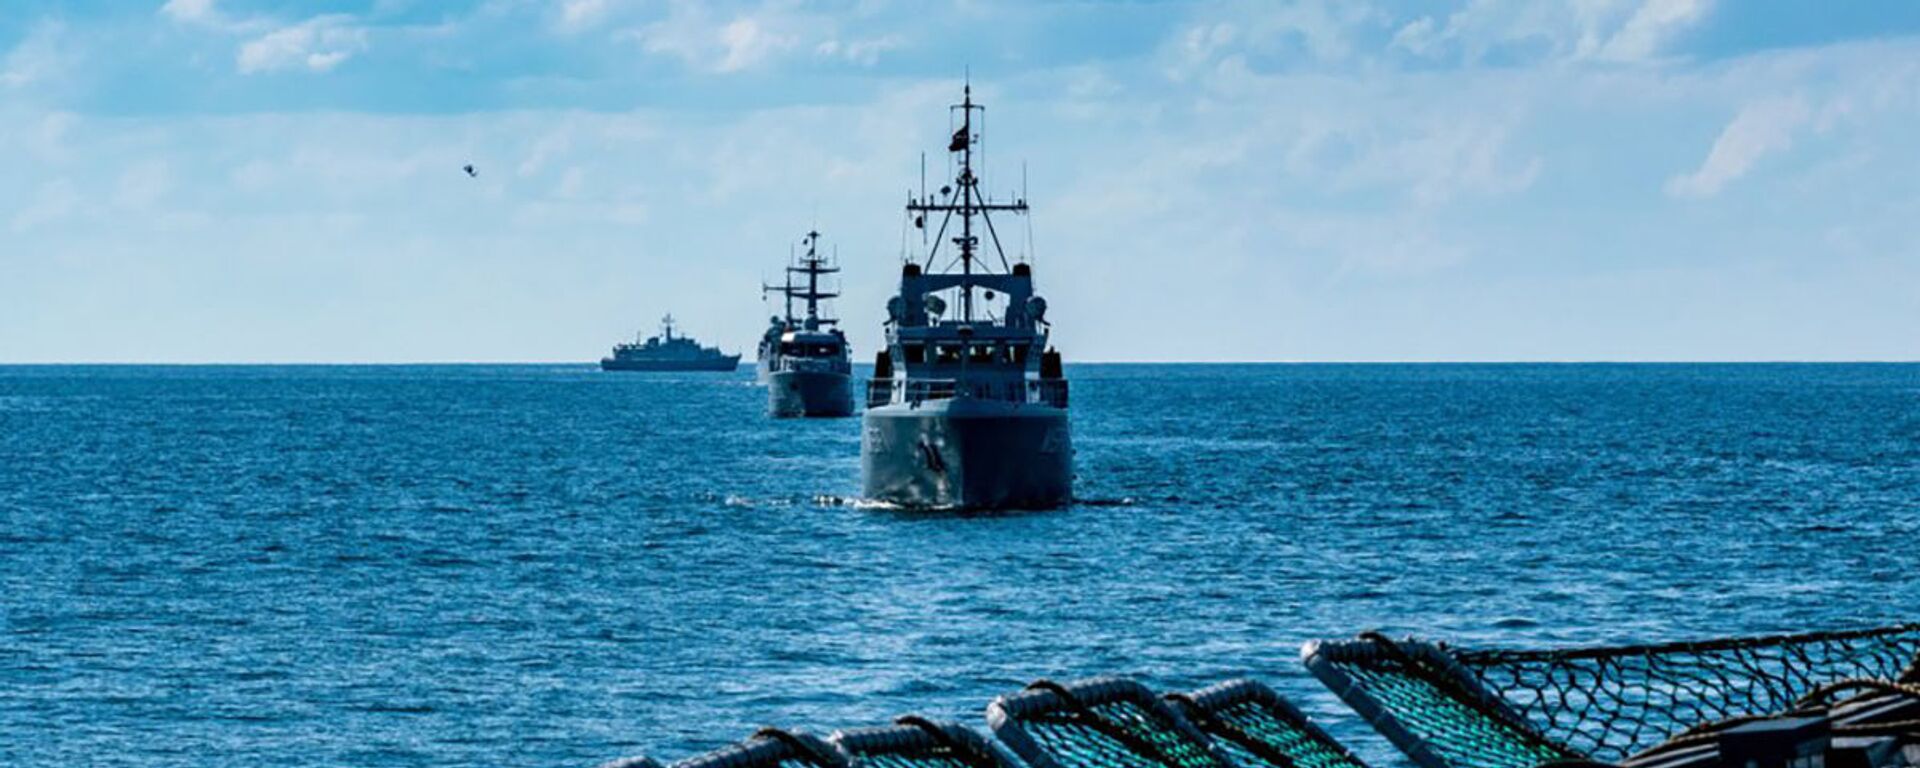 Многонациональные корабли проходят Балтийское море во время ежегодных учений BALTOPS - 2019, 9 июня 2019 года - Sputnik Lietuva, 1920, 06.06.2020